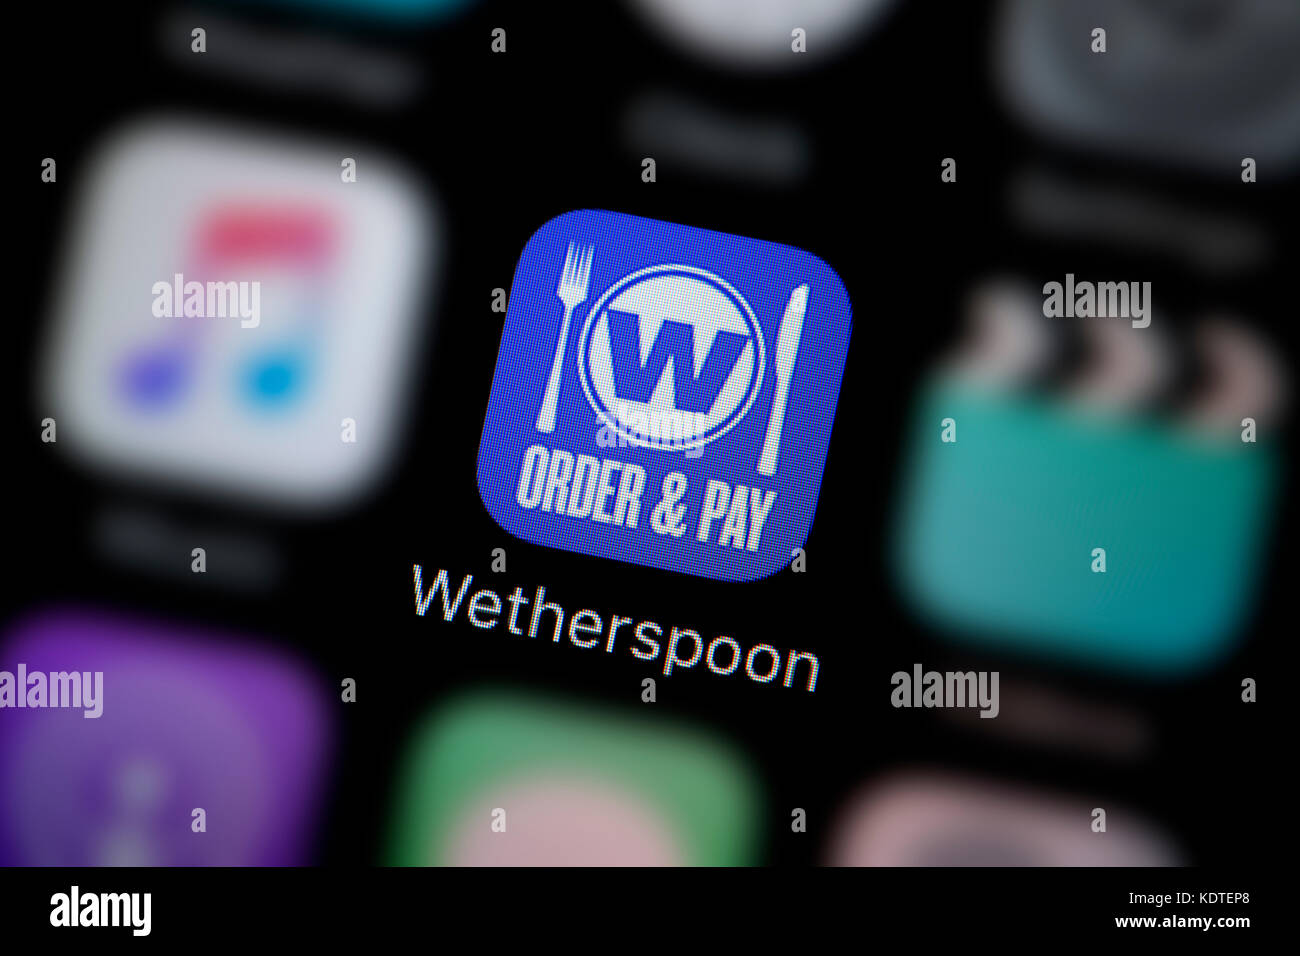 Un primer plano del logotipo que representa el orden Wetherspoon y pague el icono de app, como se ve en la pantalla de un teléfono inteligente (uso Editorial solamente) Foto de stock